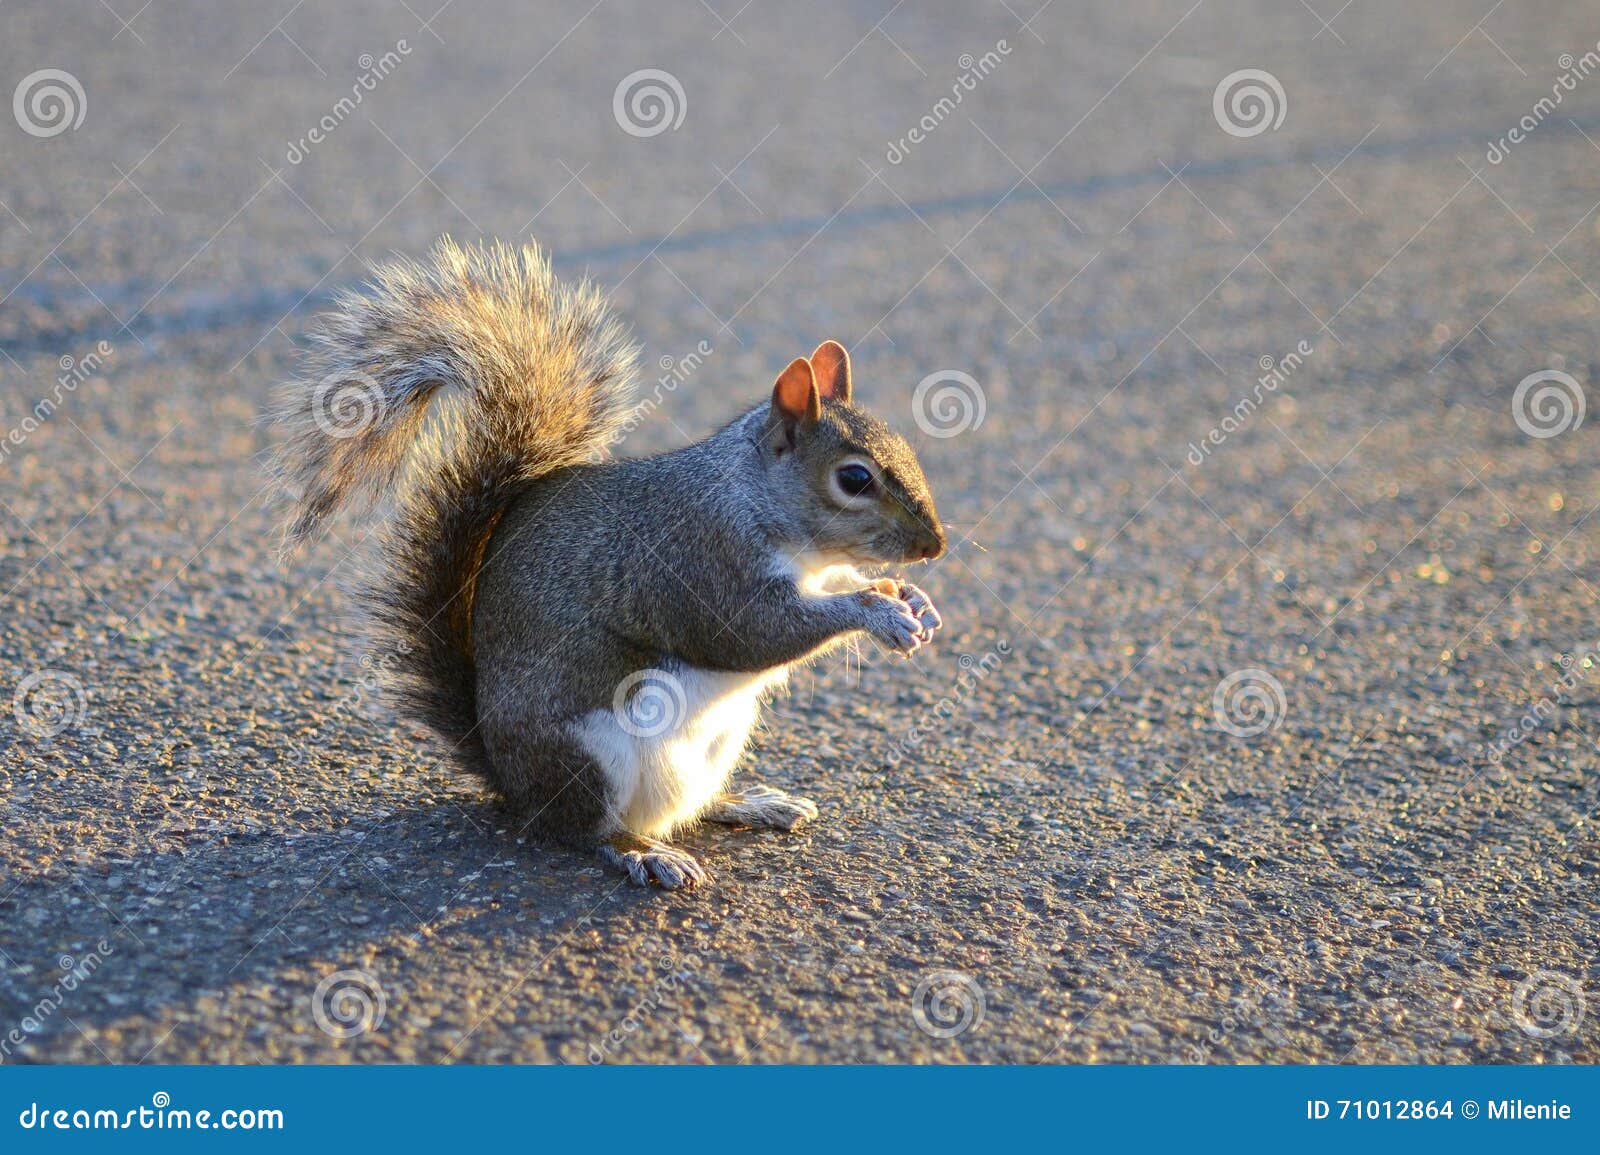 Grey squirrel on ground